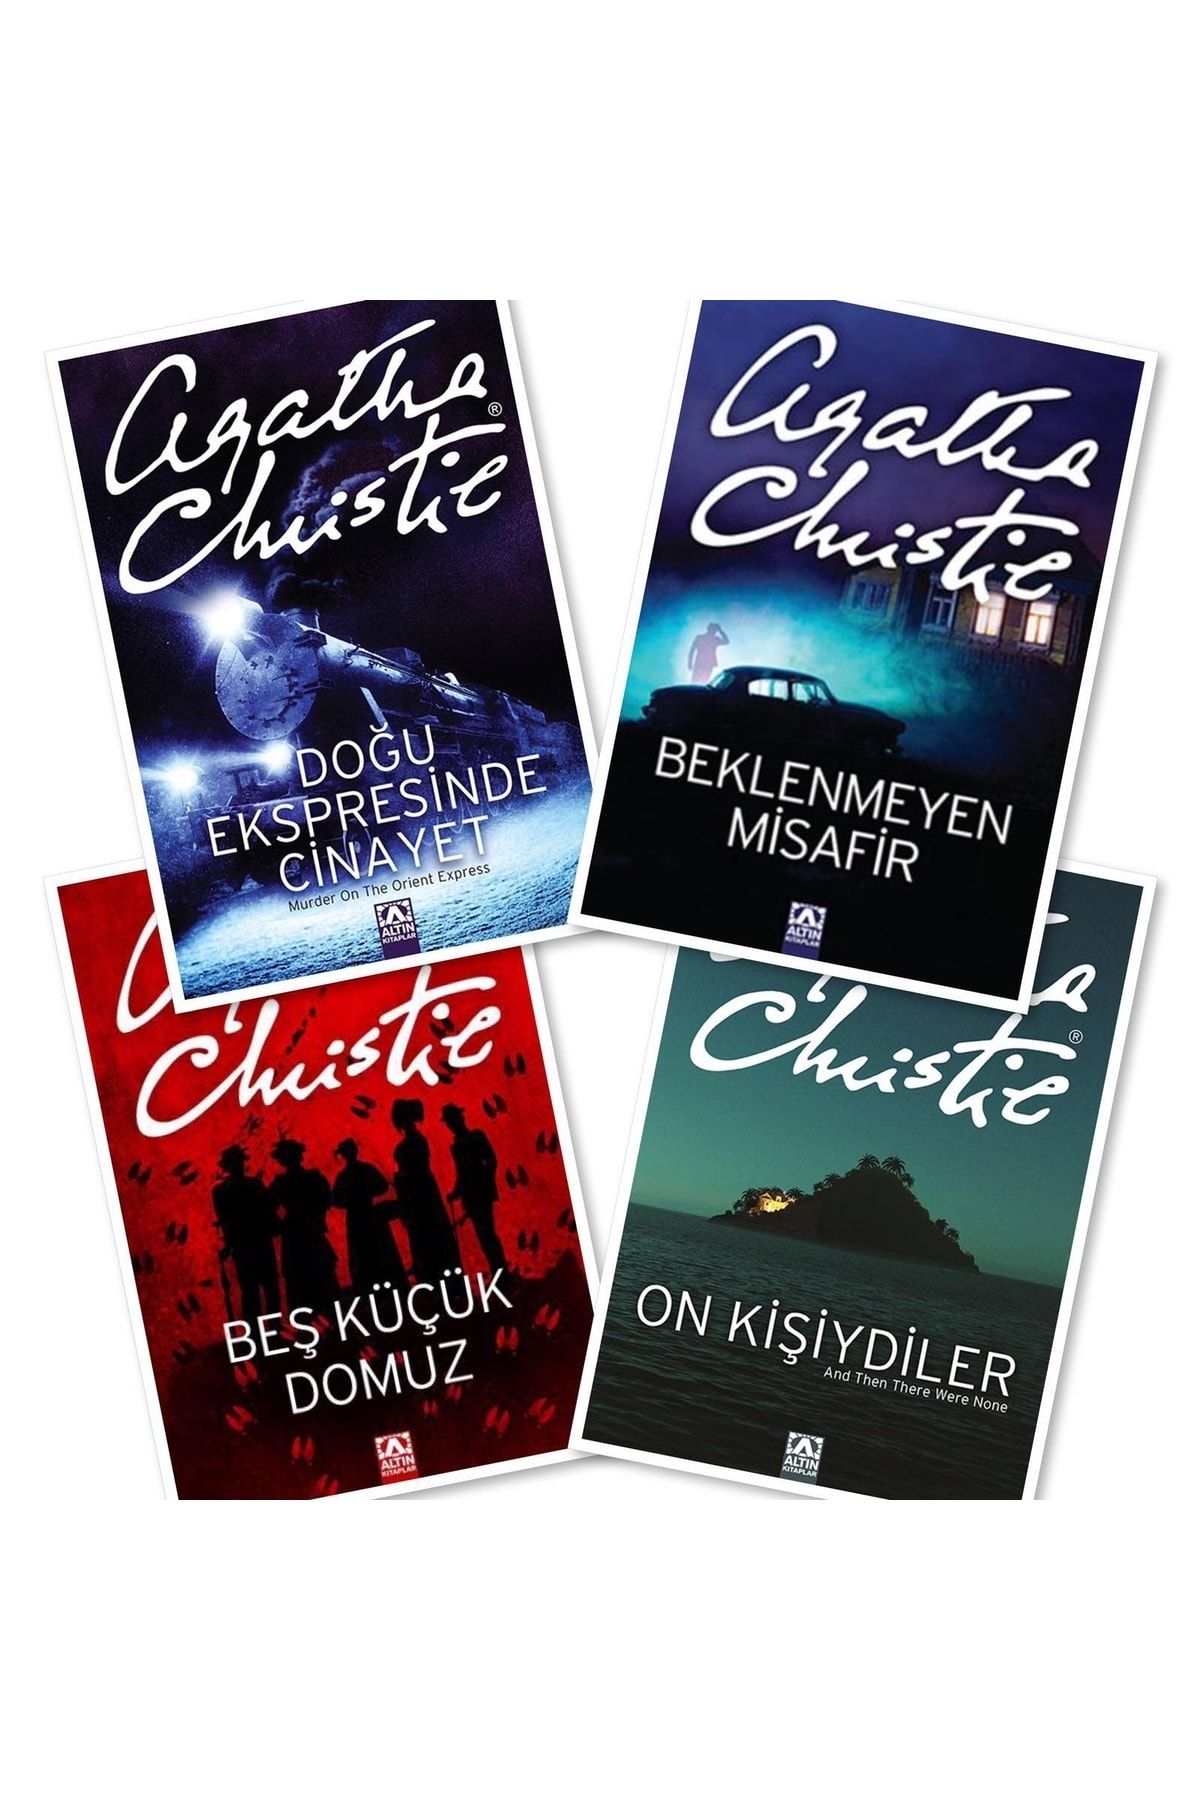 Altın Kitaplar Cep Boy, Doğu Ekspresinde Cinayet - Beklenmeyen Misafir - On Kişiydiler 1 Agatha Christie